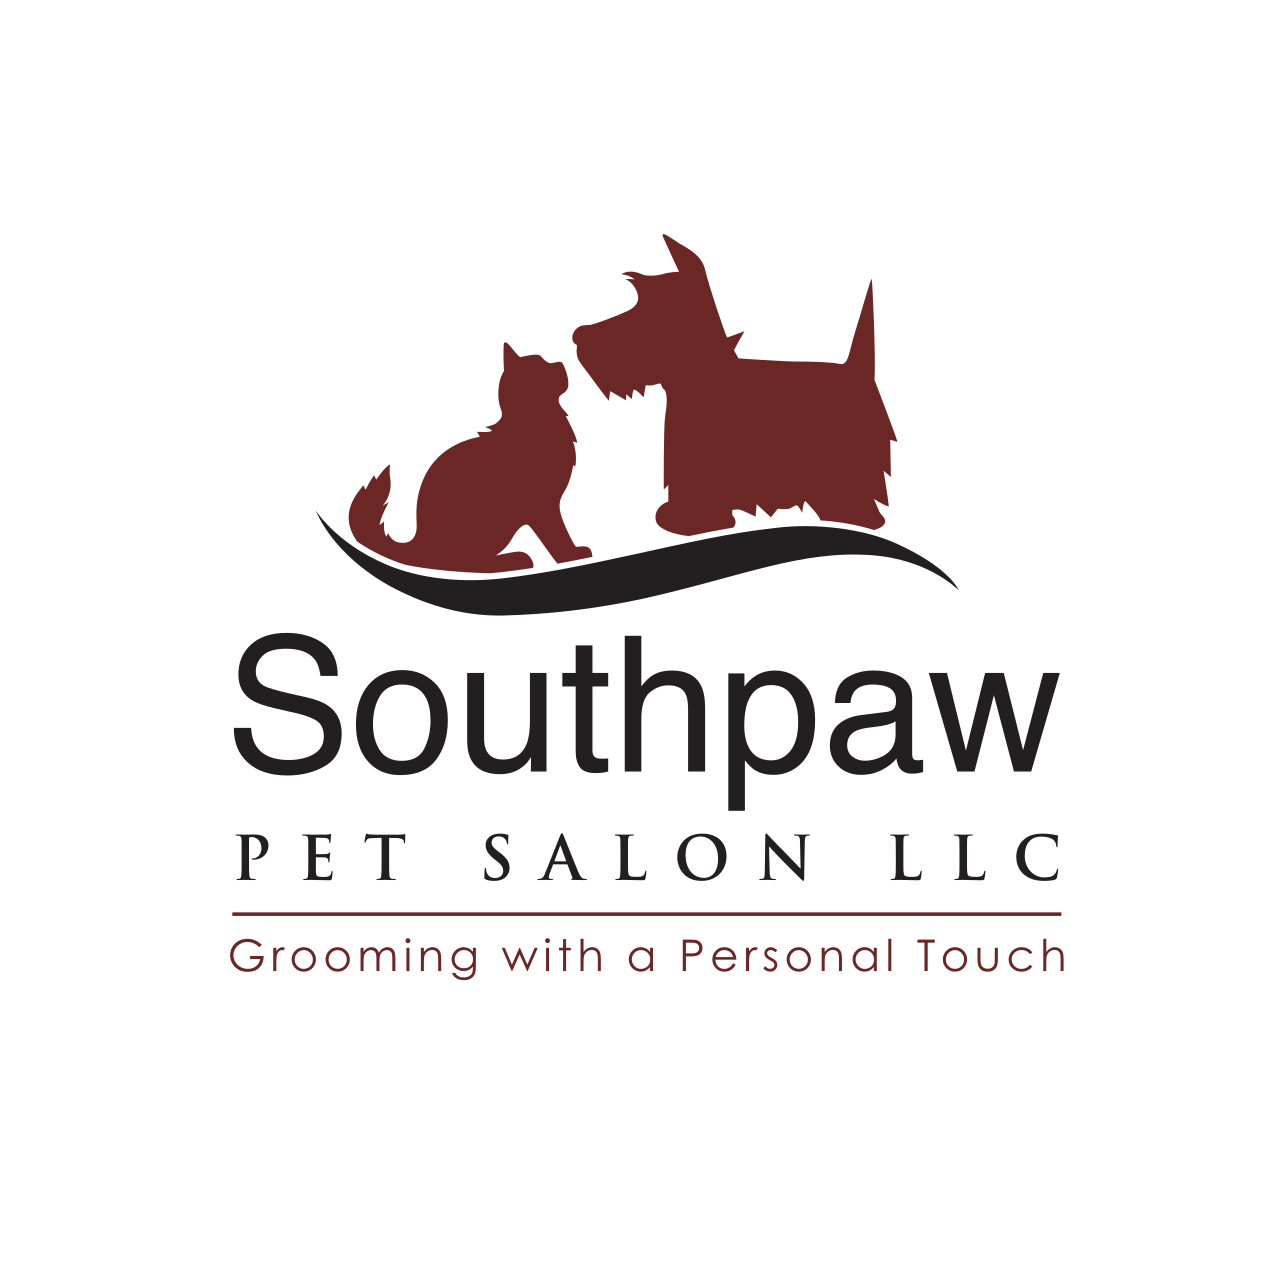 Southpaw Pet Salon LLC